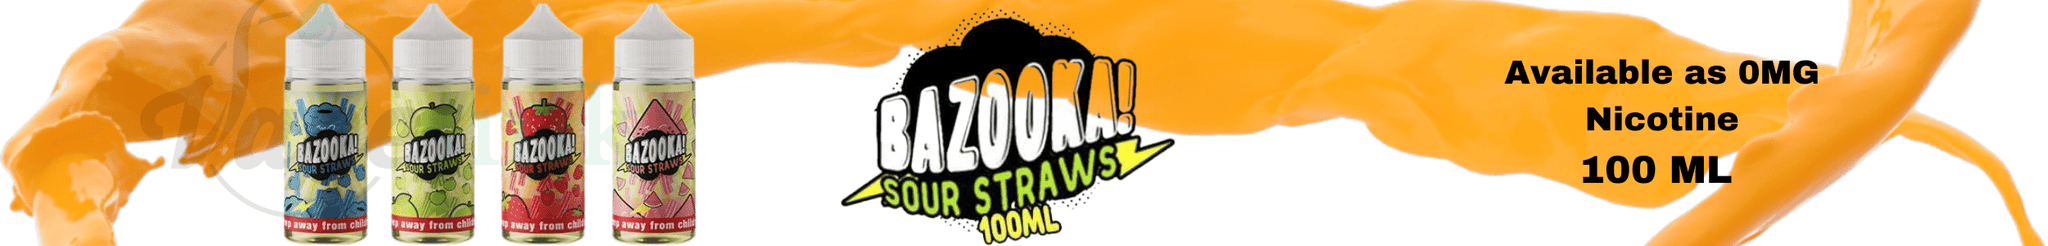 Bazooka Sour Straws E-Liquid | E Juice in Australia | Vapelink Australia | Bazooka! Sour Straws